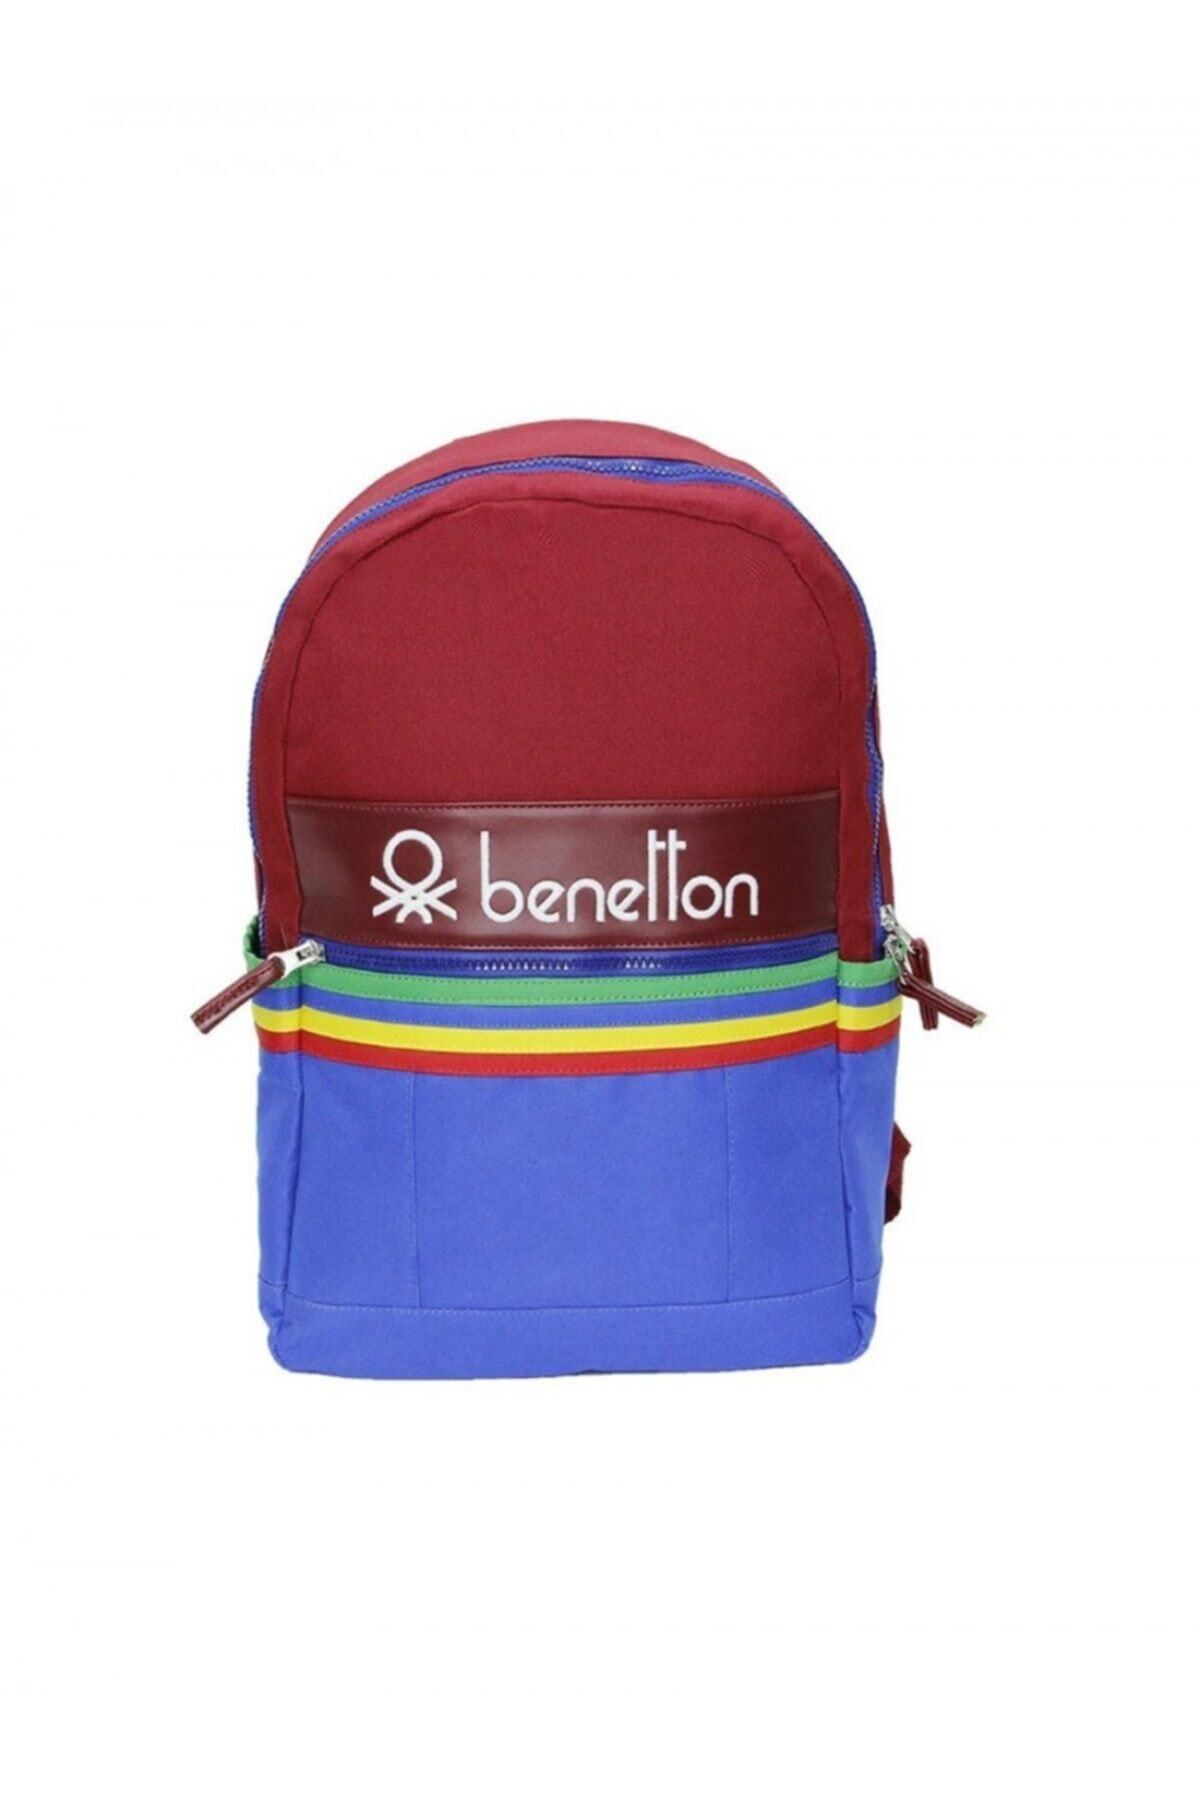 United Colors of Benetton B. Okul Sırt Çantası Kırmızı 70044